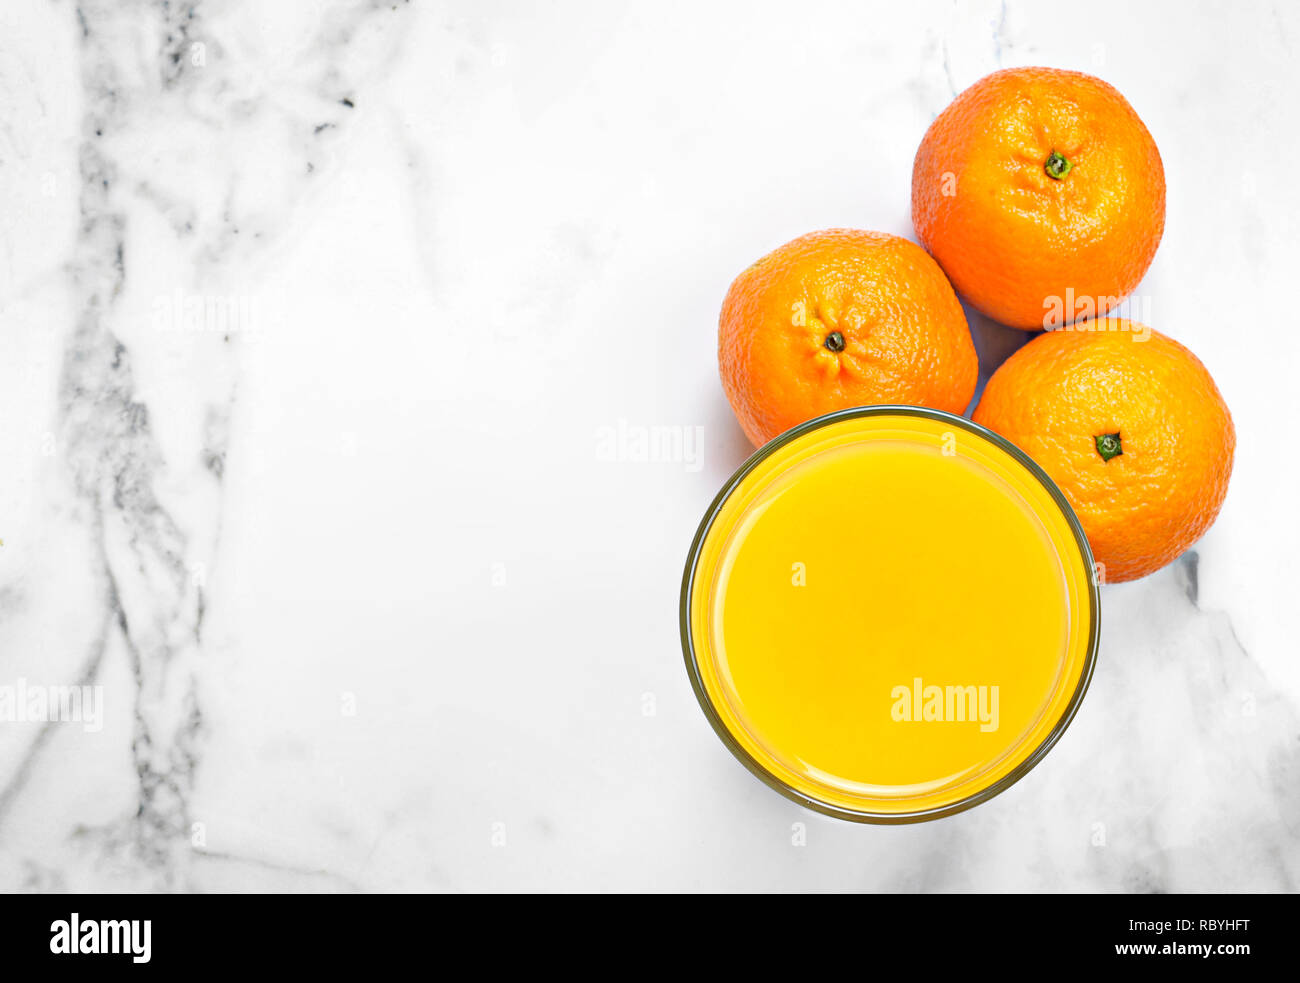 Frisch gepresster Orangensaft in einem Glas, Ansicht von oben. Gesunde Fruchtsäfte auf weißem Marmor oder Stein. Stockfoto